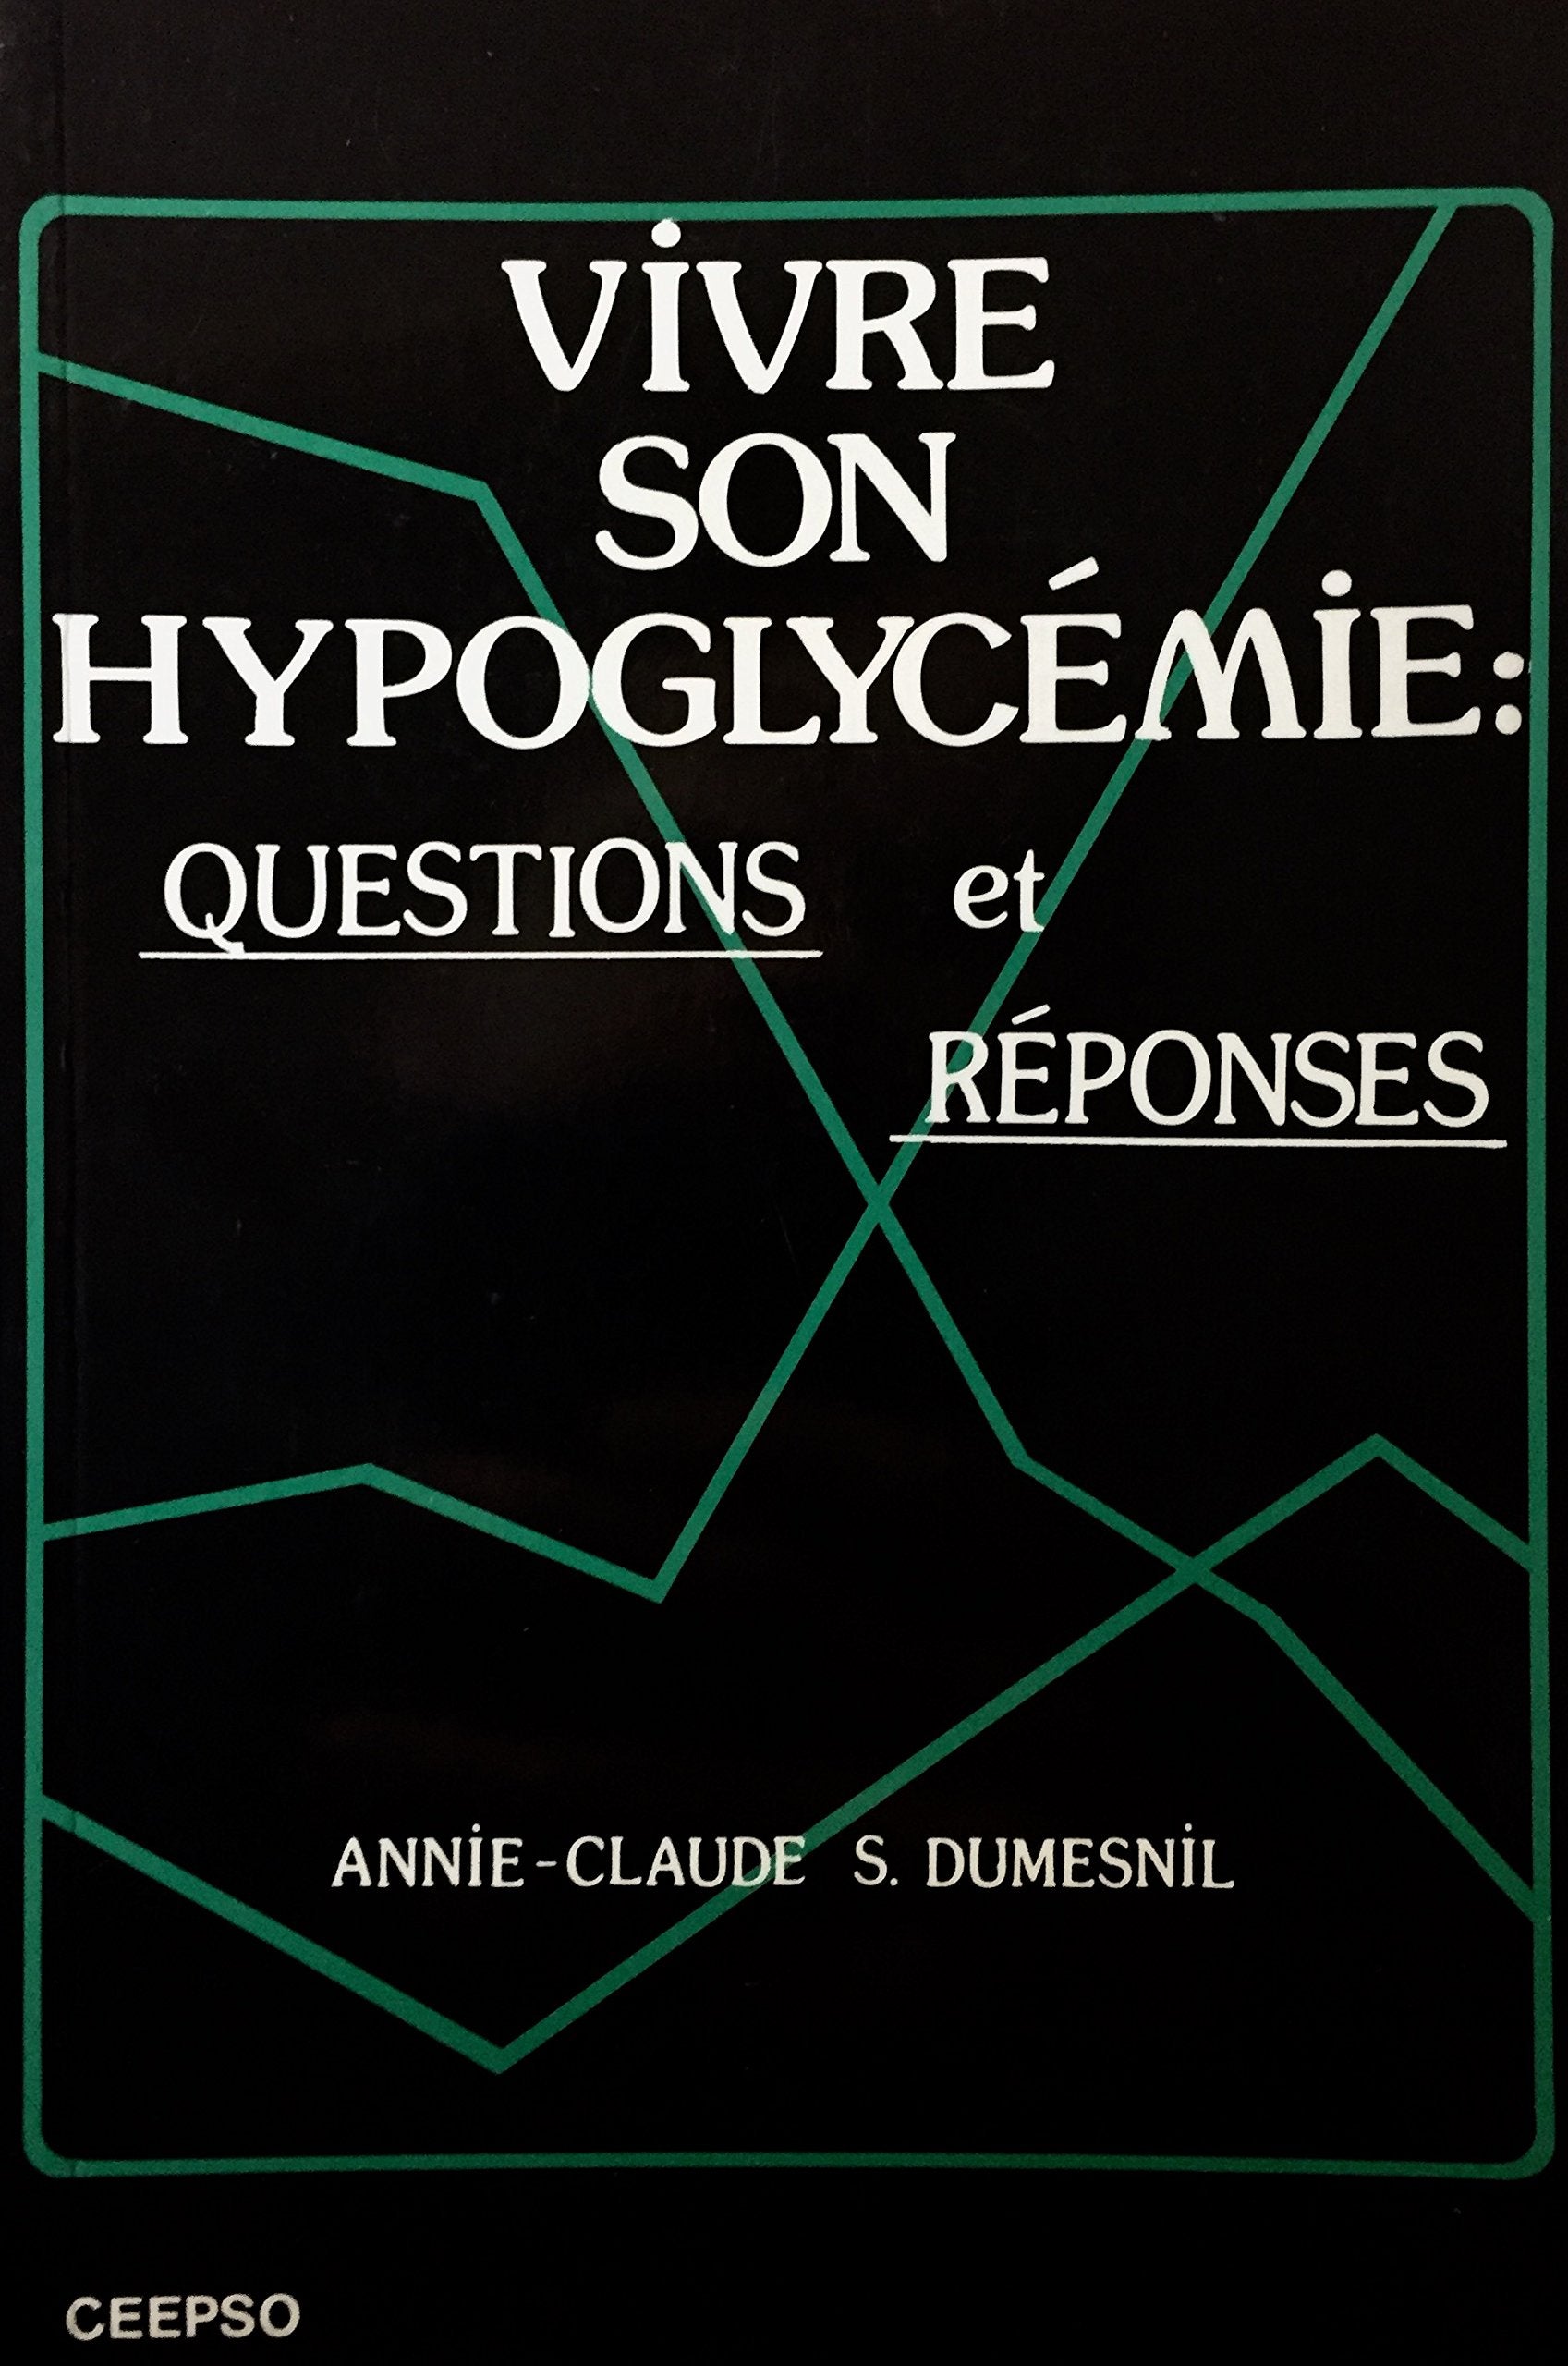 Livre ISBN 2980190306 Vivre son hypoglycémie : questions et réponses (Annie-Claude S. Dumesnil)